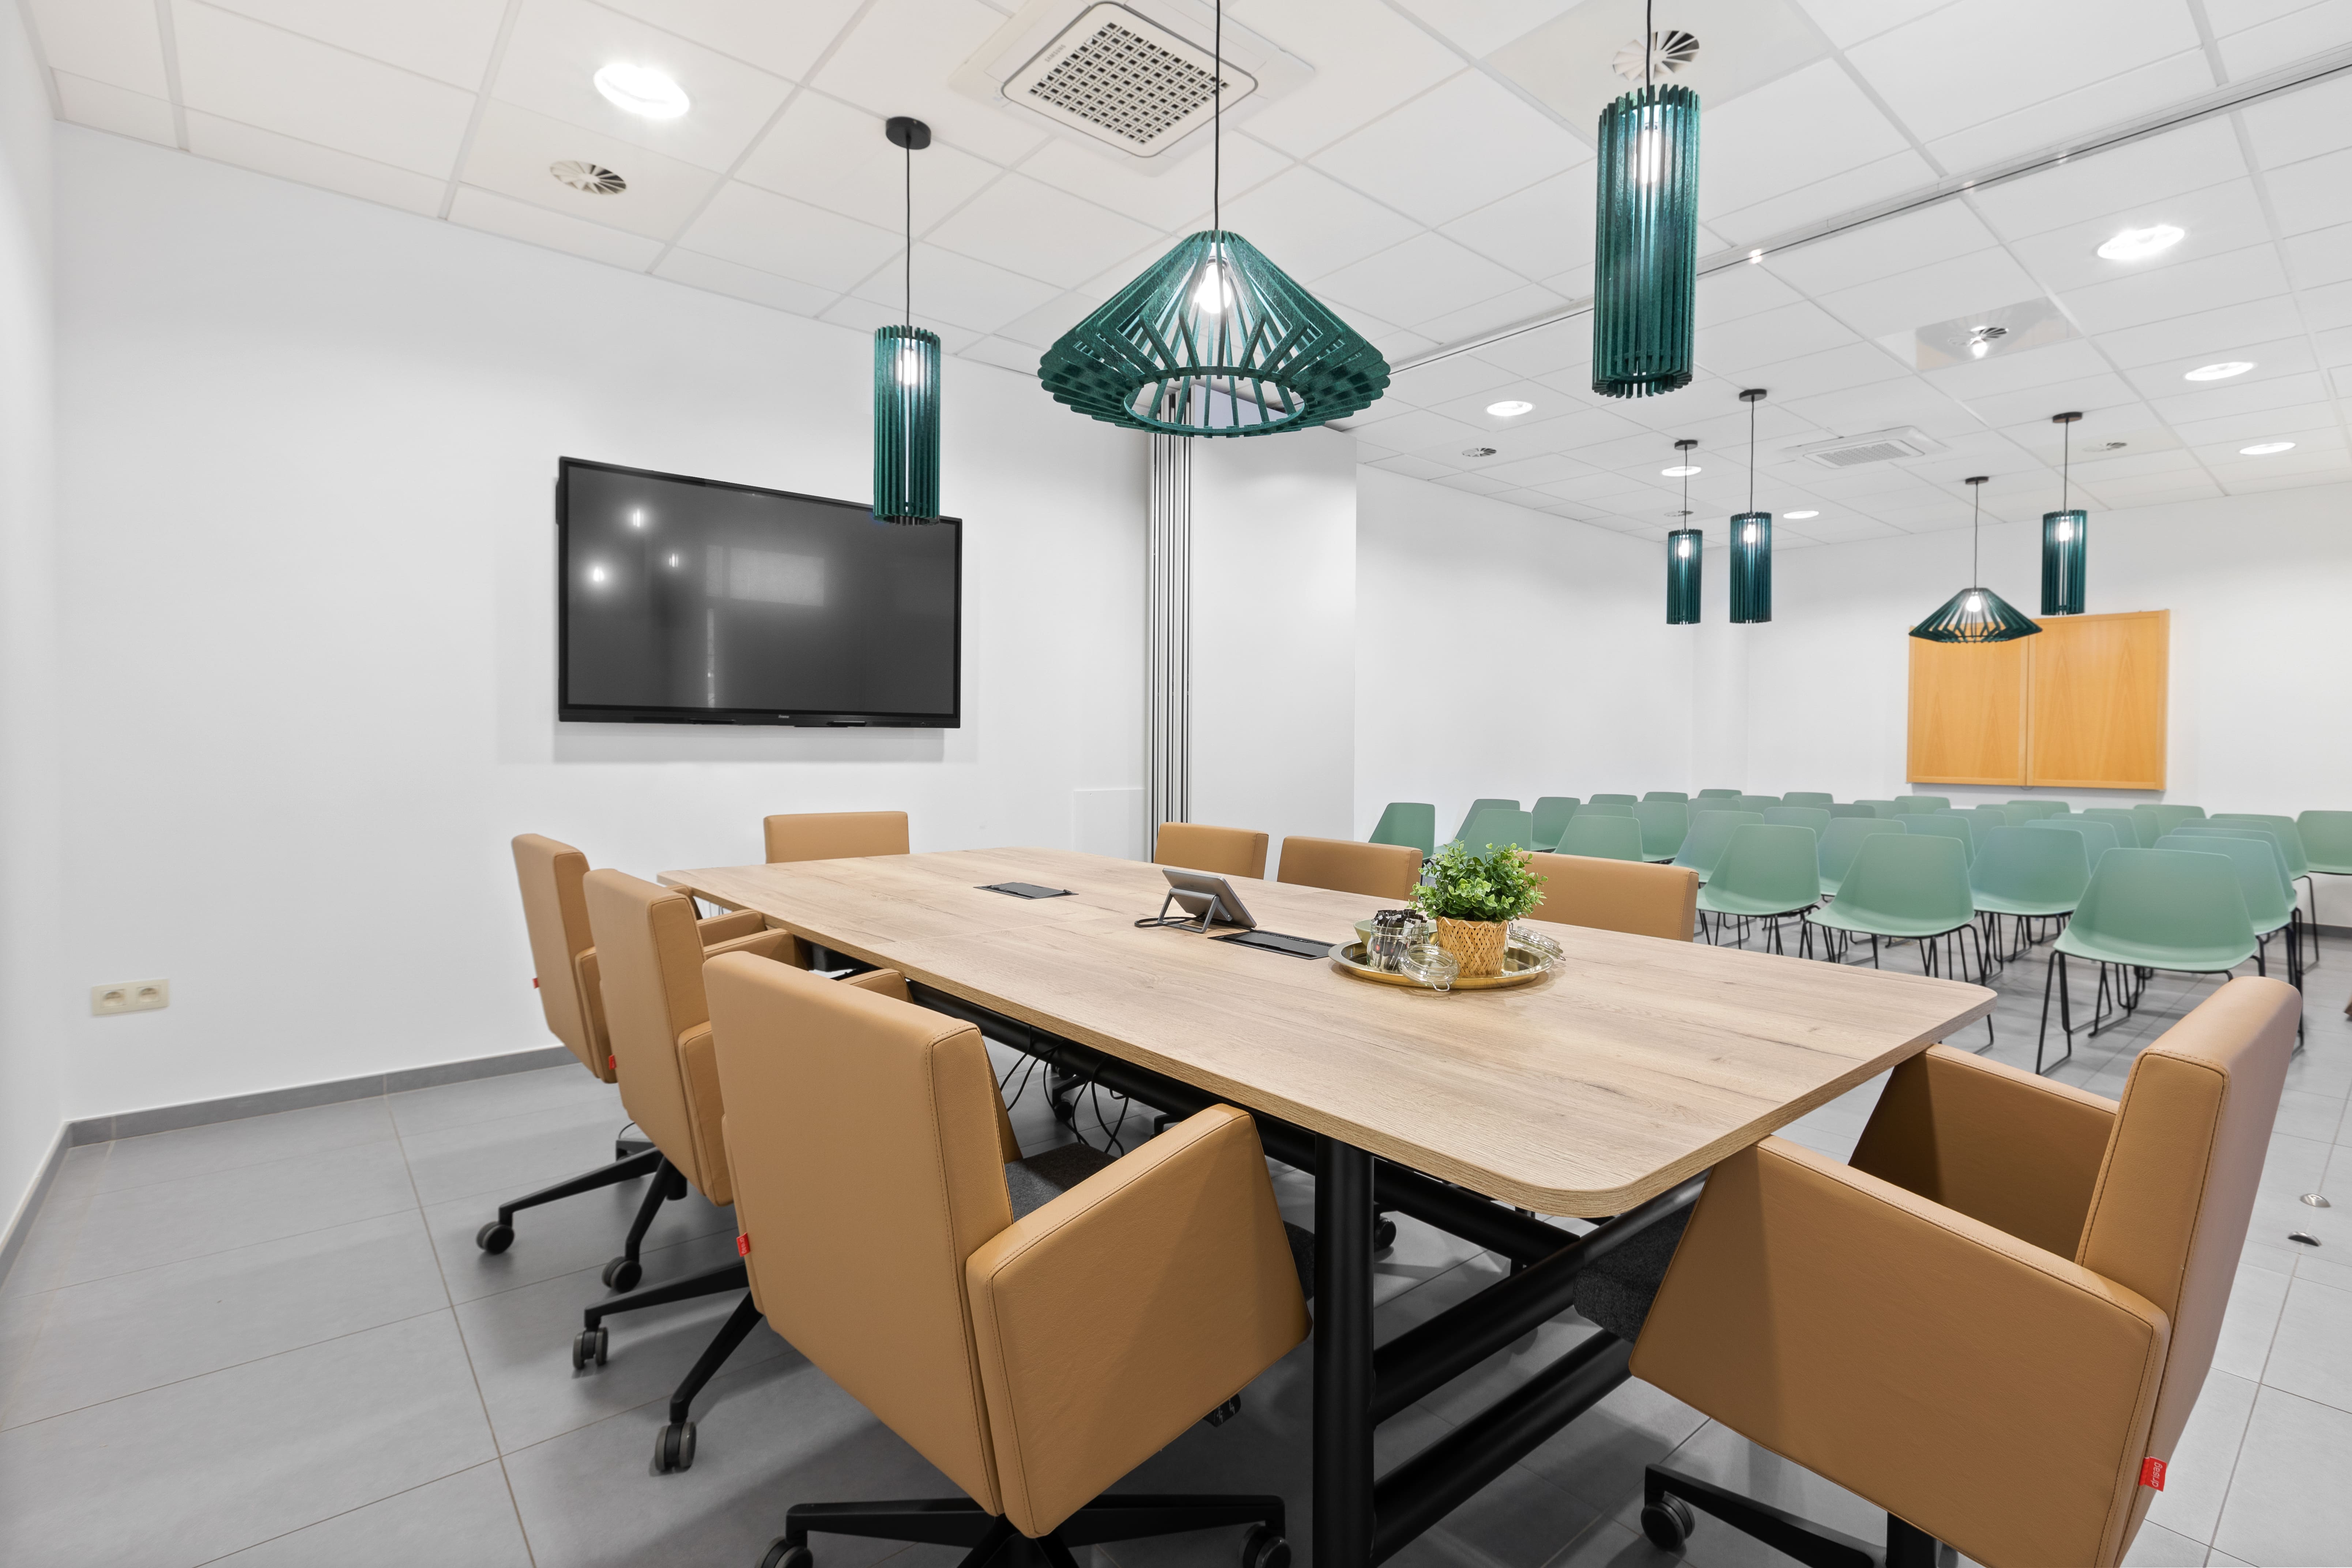 vergaderzaal of opleidingsruimte in een bedrijf met duurzaam Belgisch meubilair